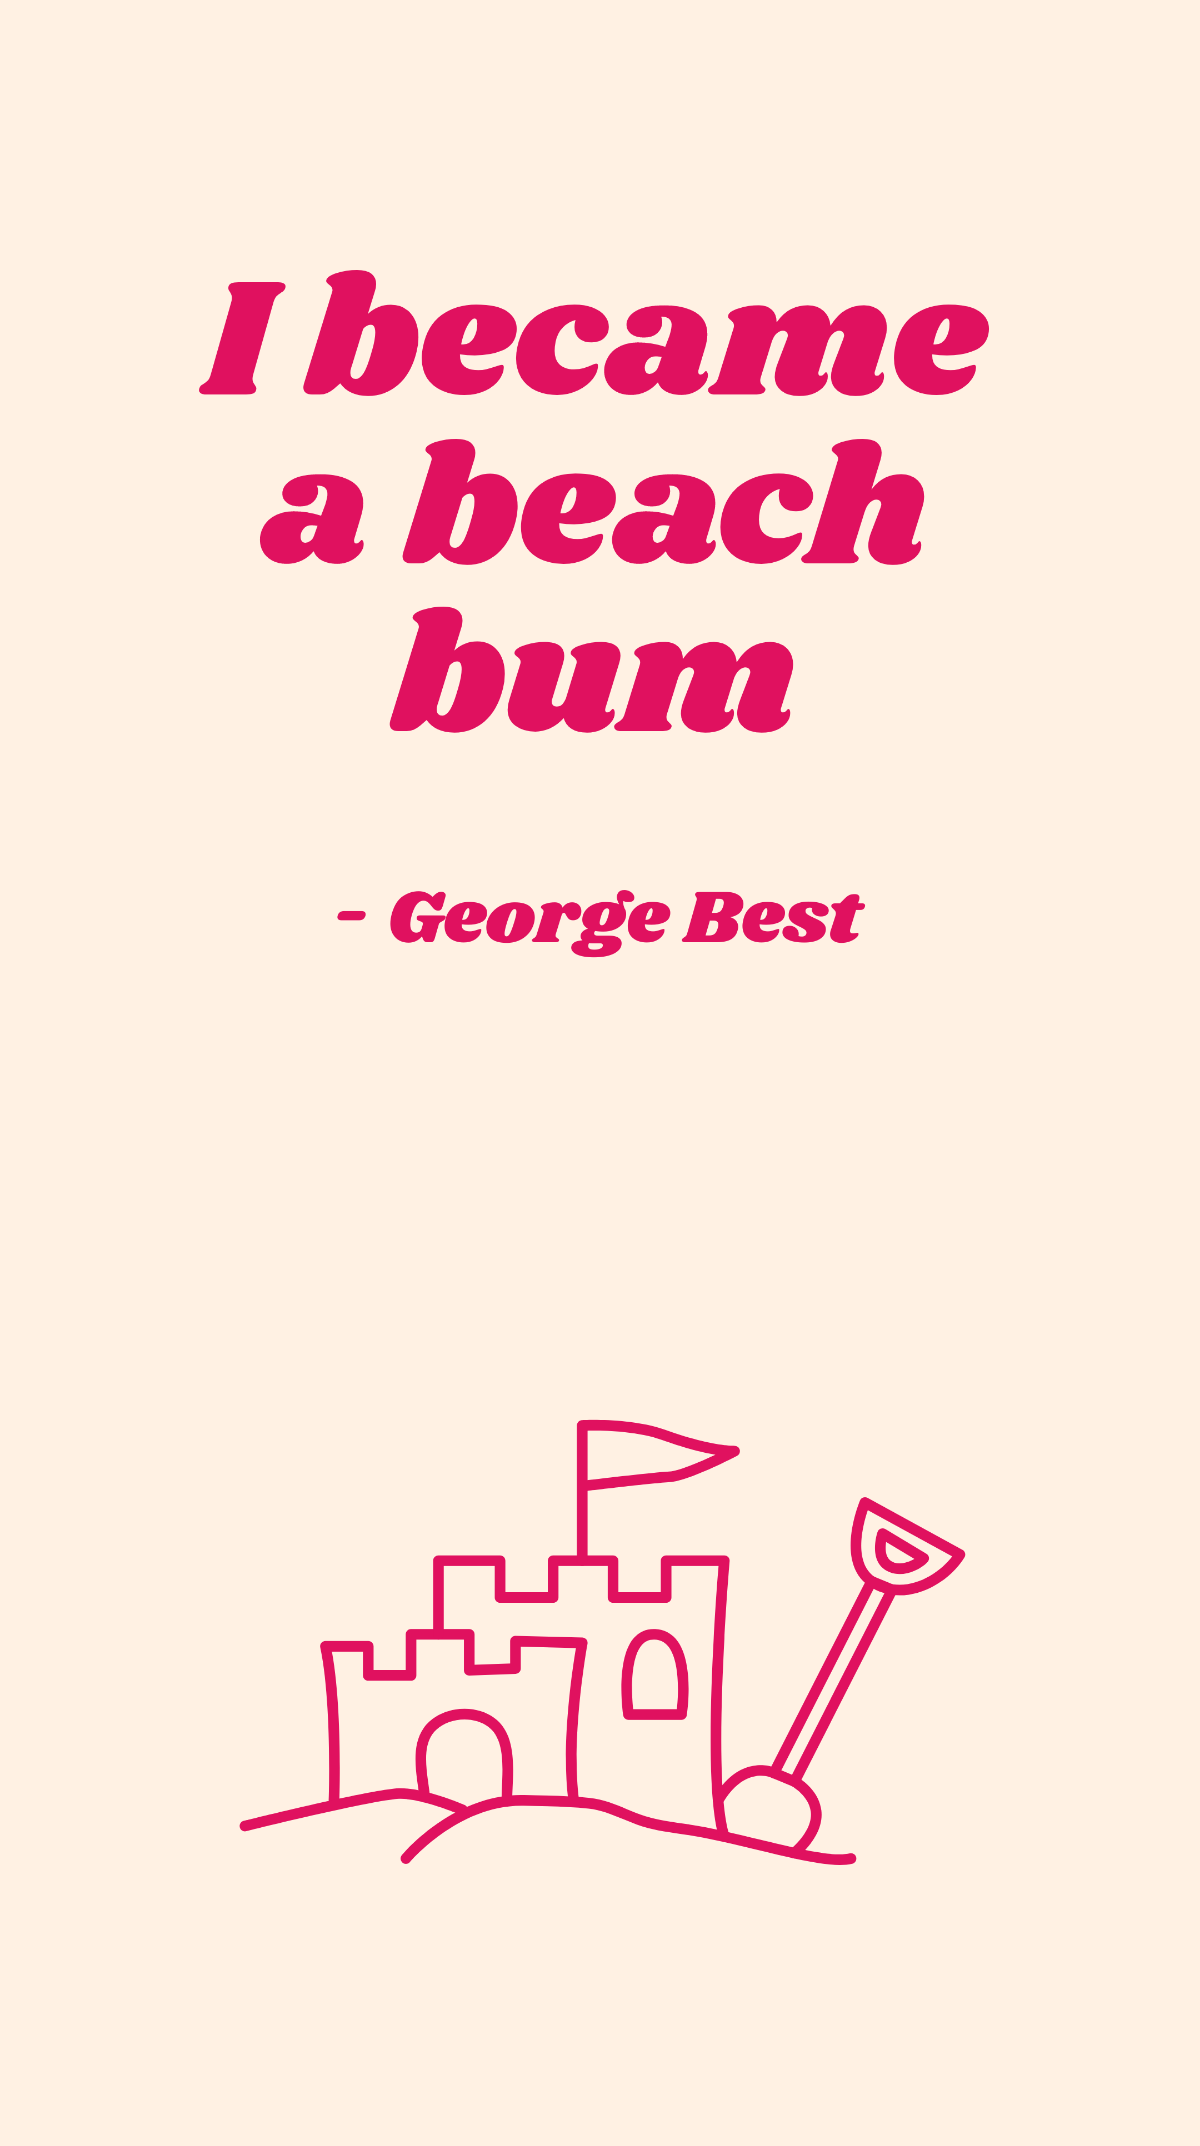 George Best - I became a beach bum